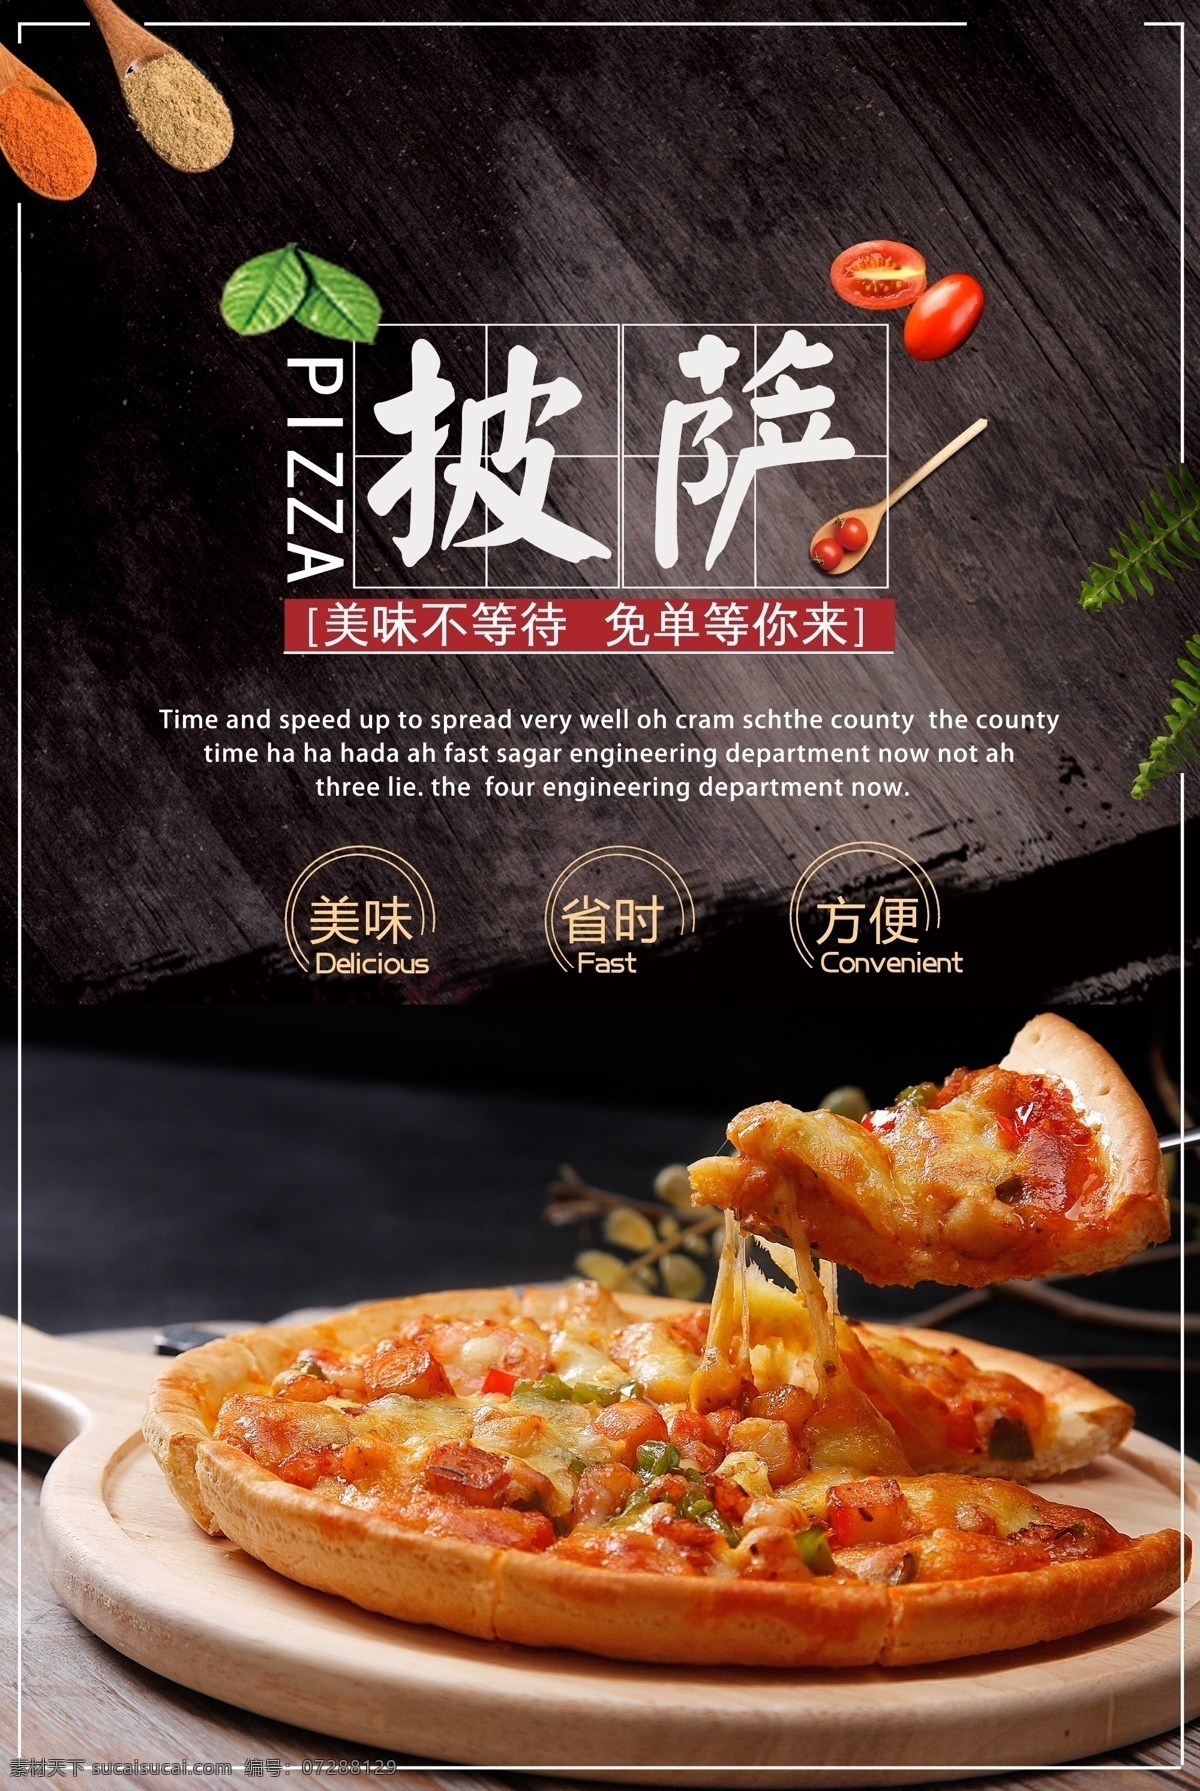 美味 披萨 美食 活动 宣传海报 美味披萨 宣传 海报 餐饮美食 类